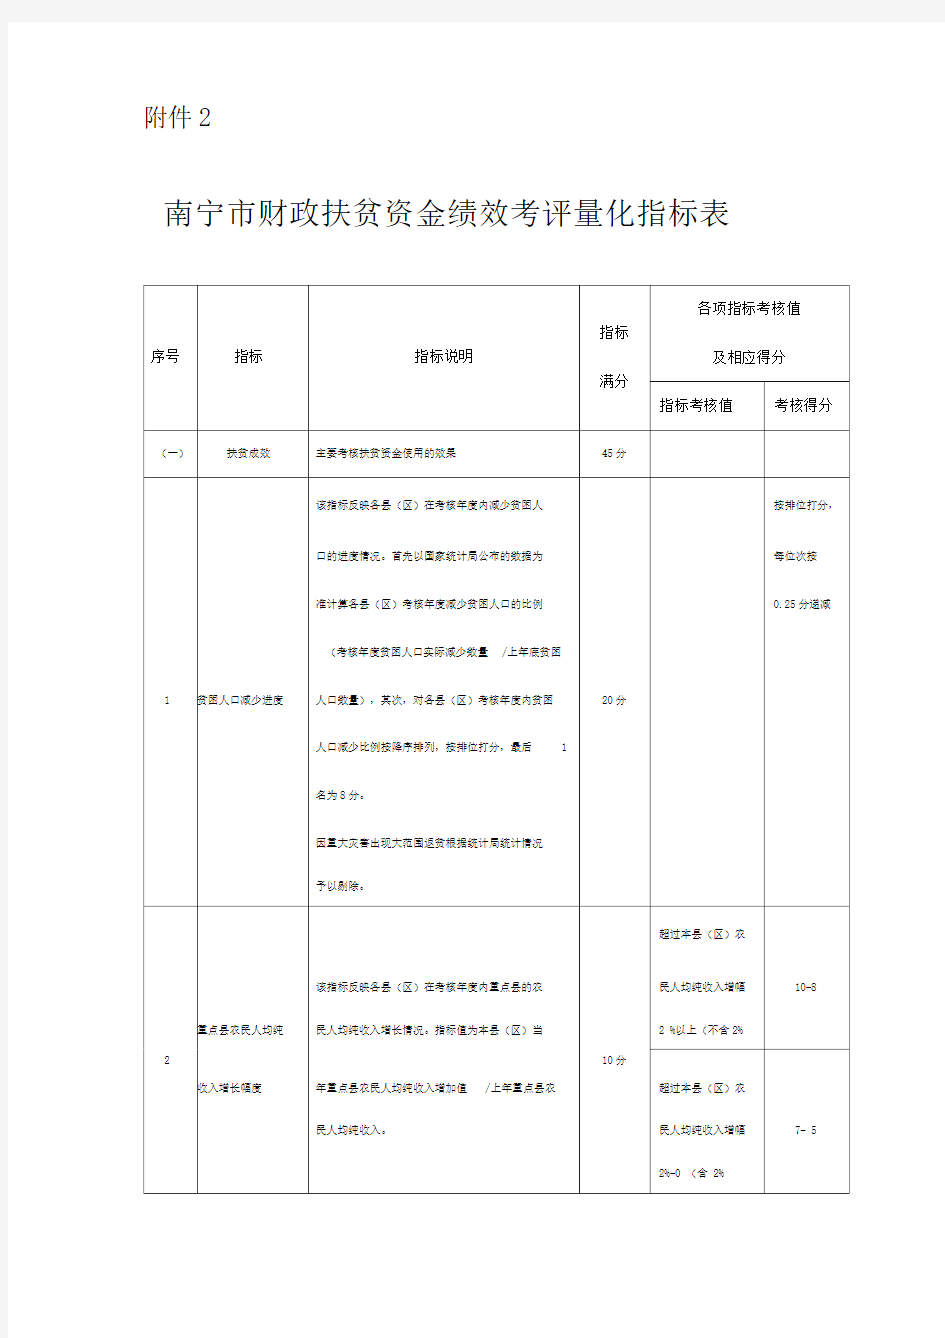 南宁市财政扶贫资金绩效考评量化指标表